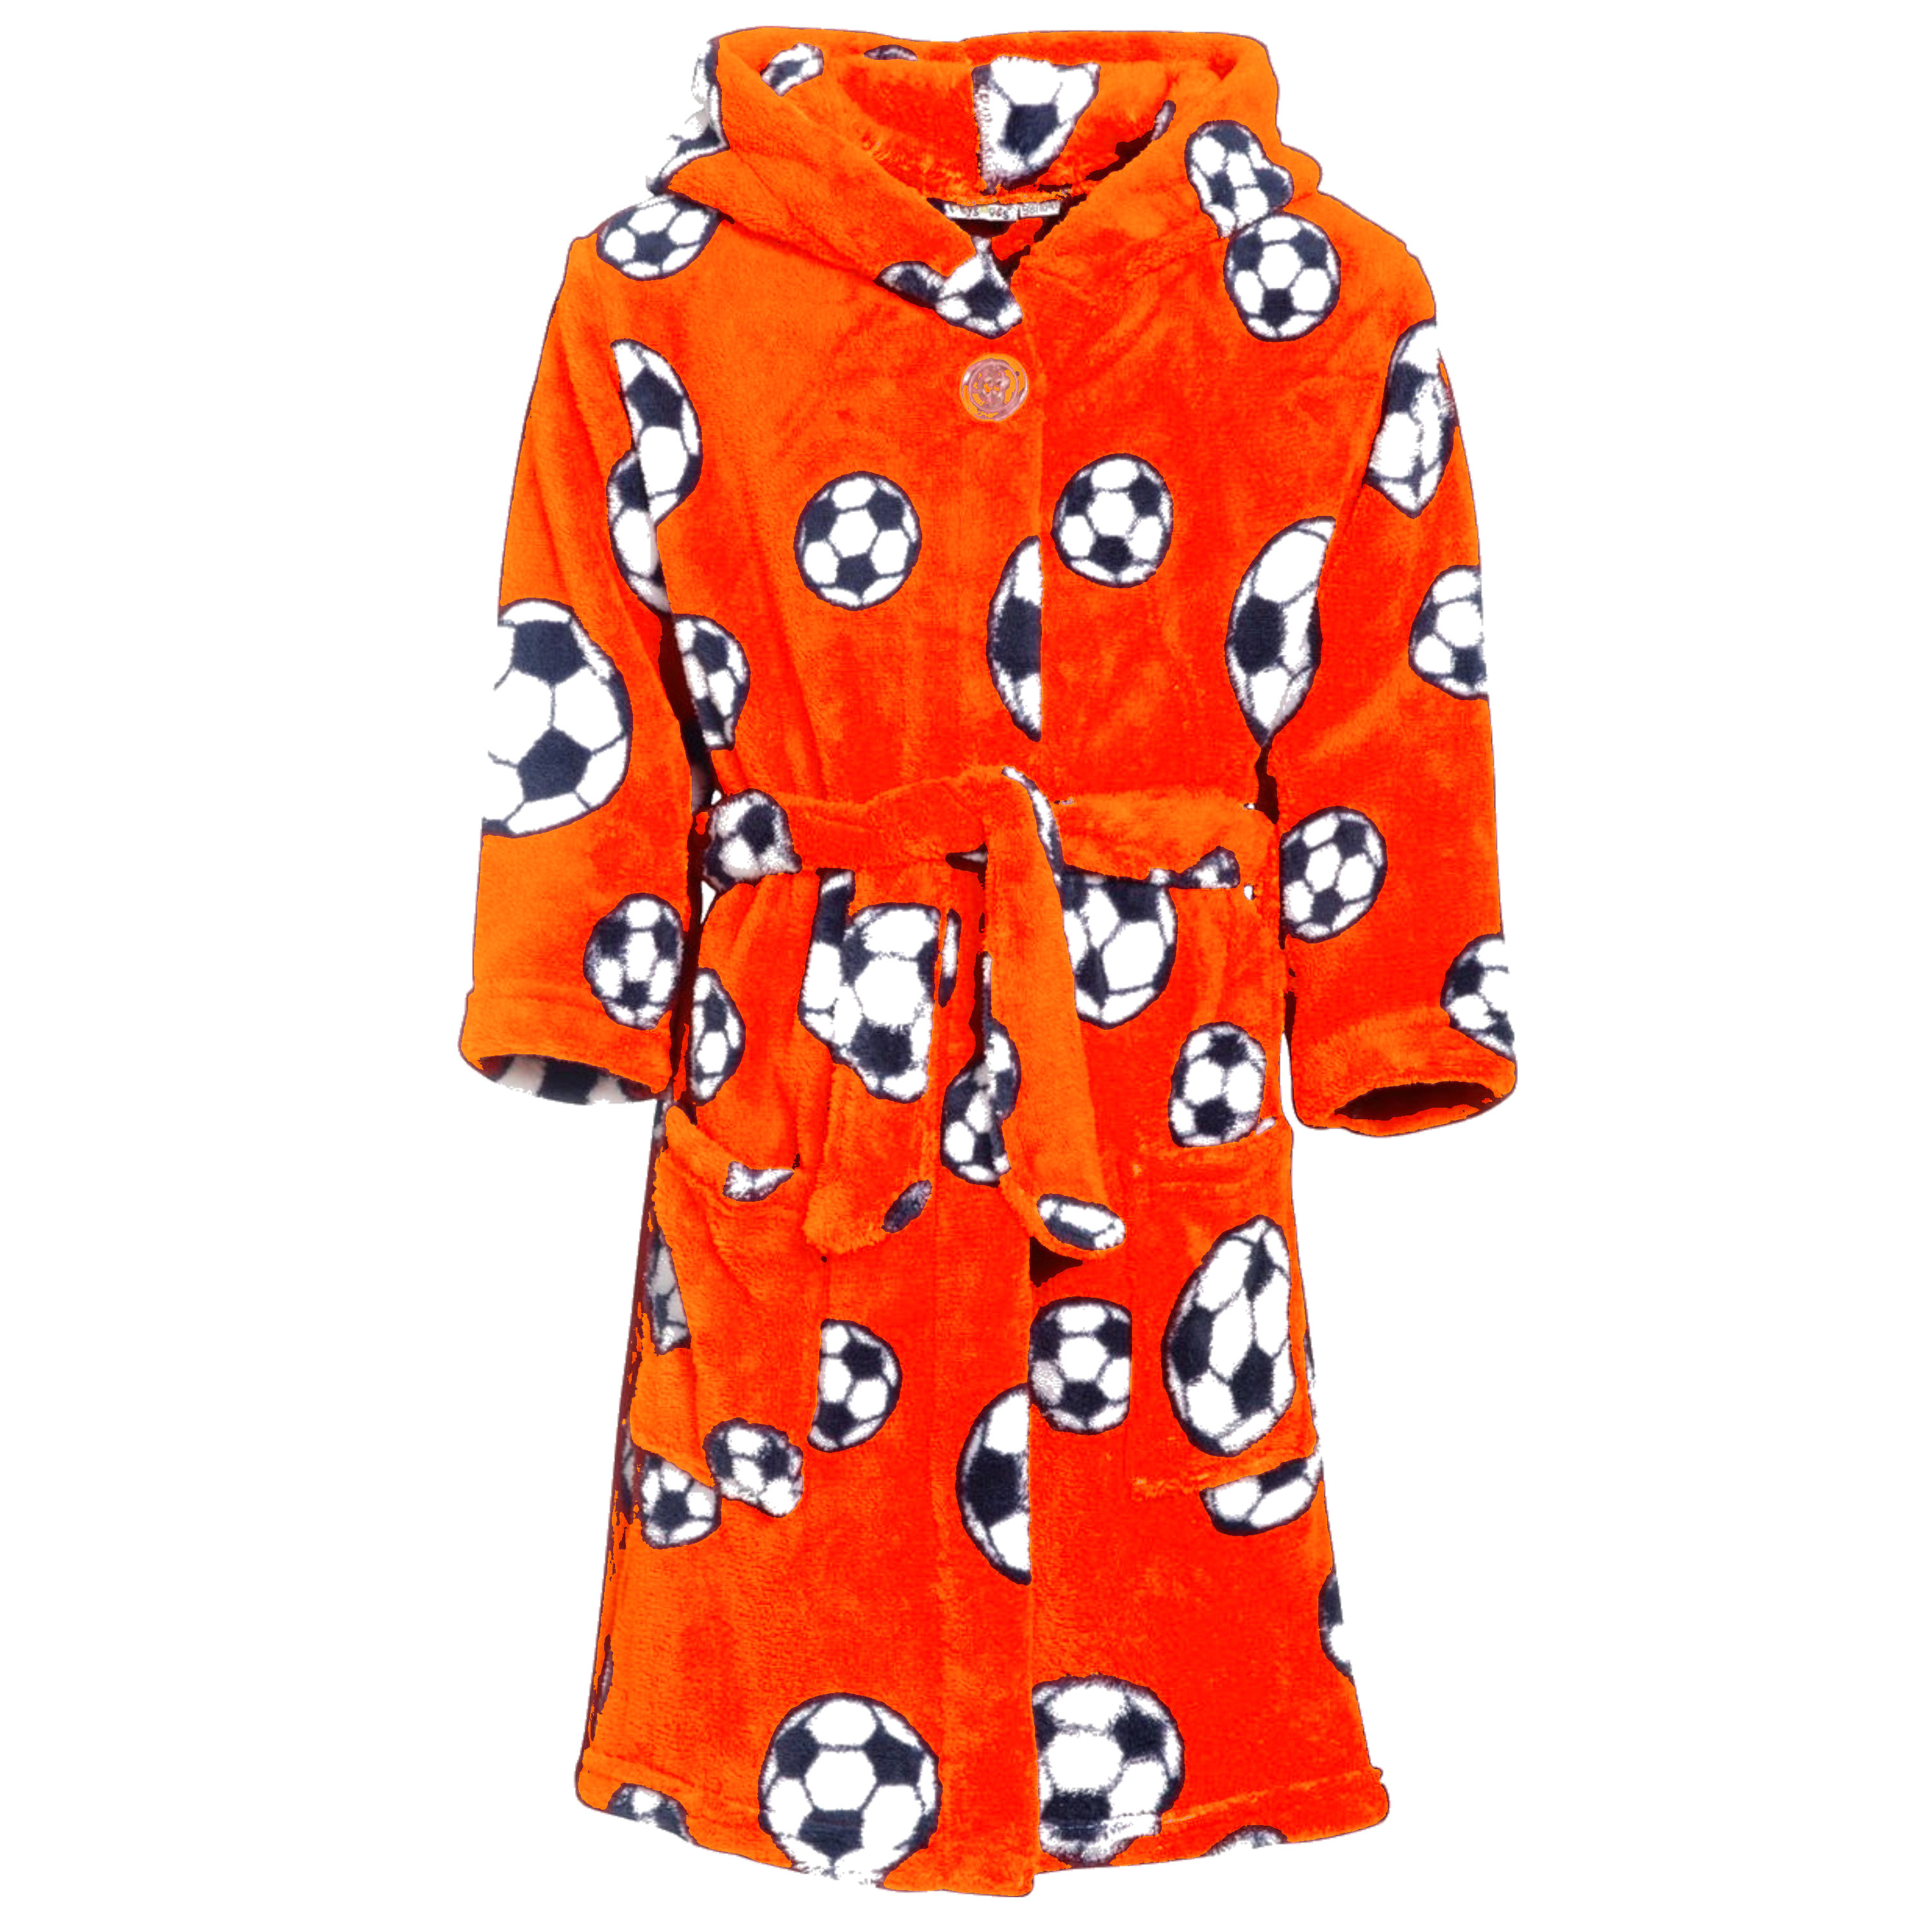 Badjas-ochtendjas oranje fleece voetbal print voor kinderen.